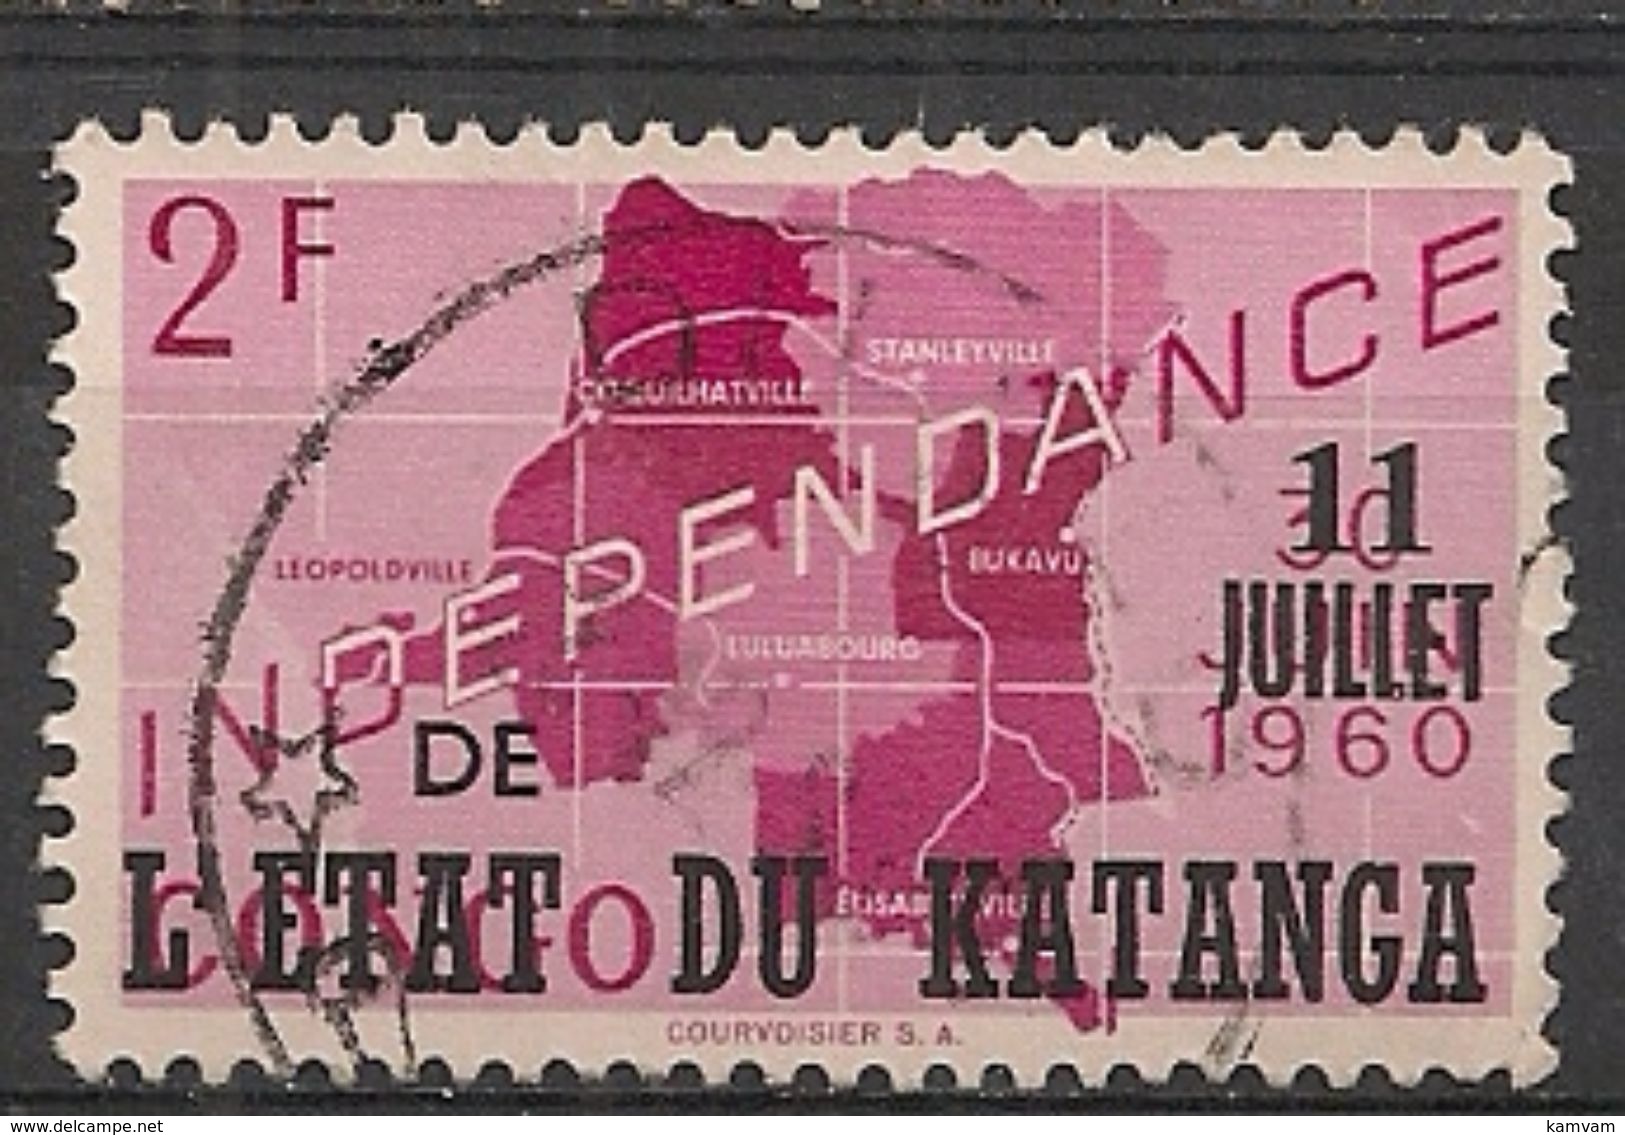 KATANGA 44 2f00 DILOLO - Katanga